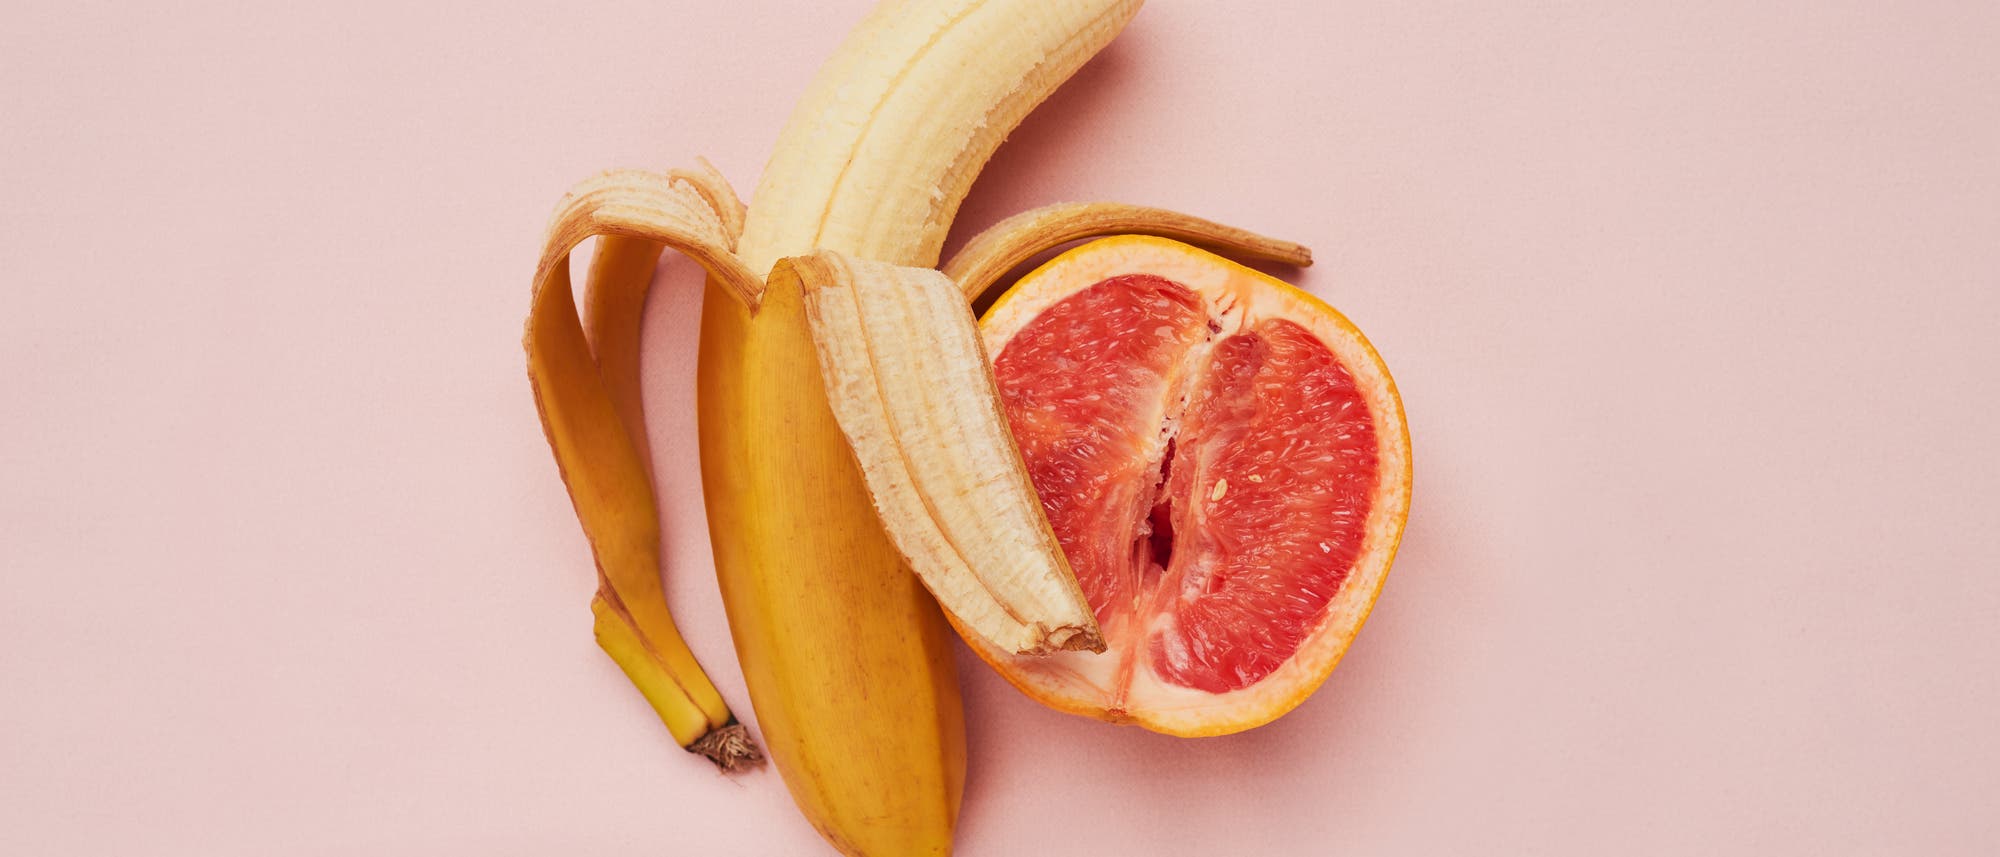 Banane und Grapefruit vor rosafarbenem Hintergrund